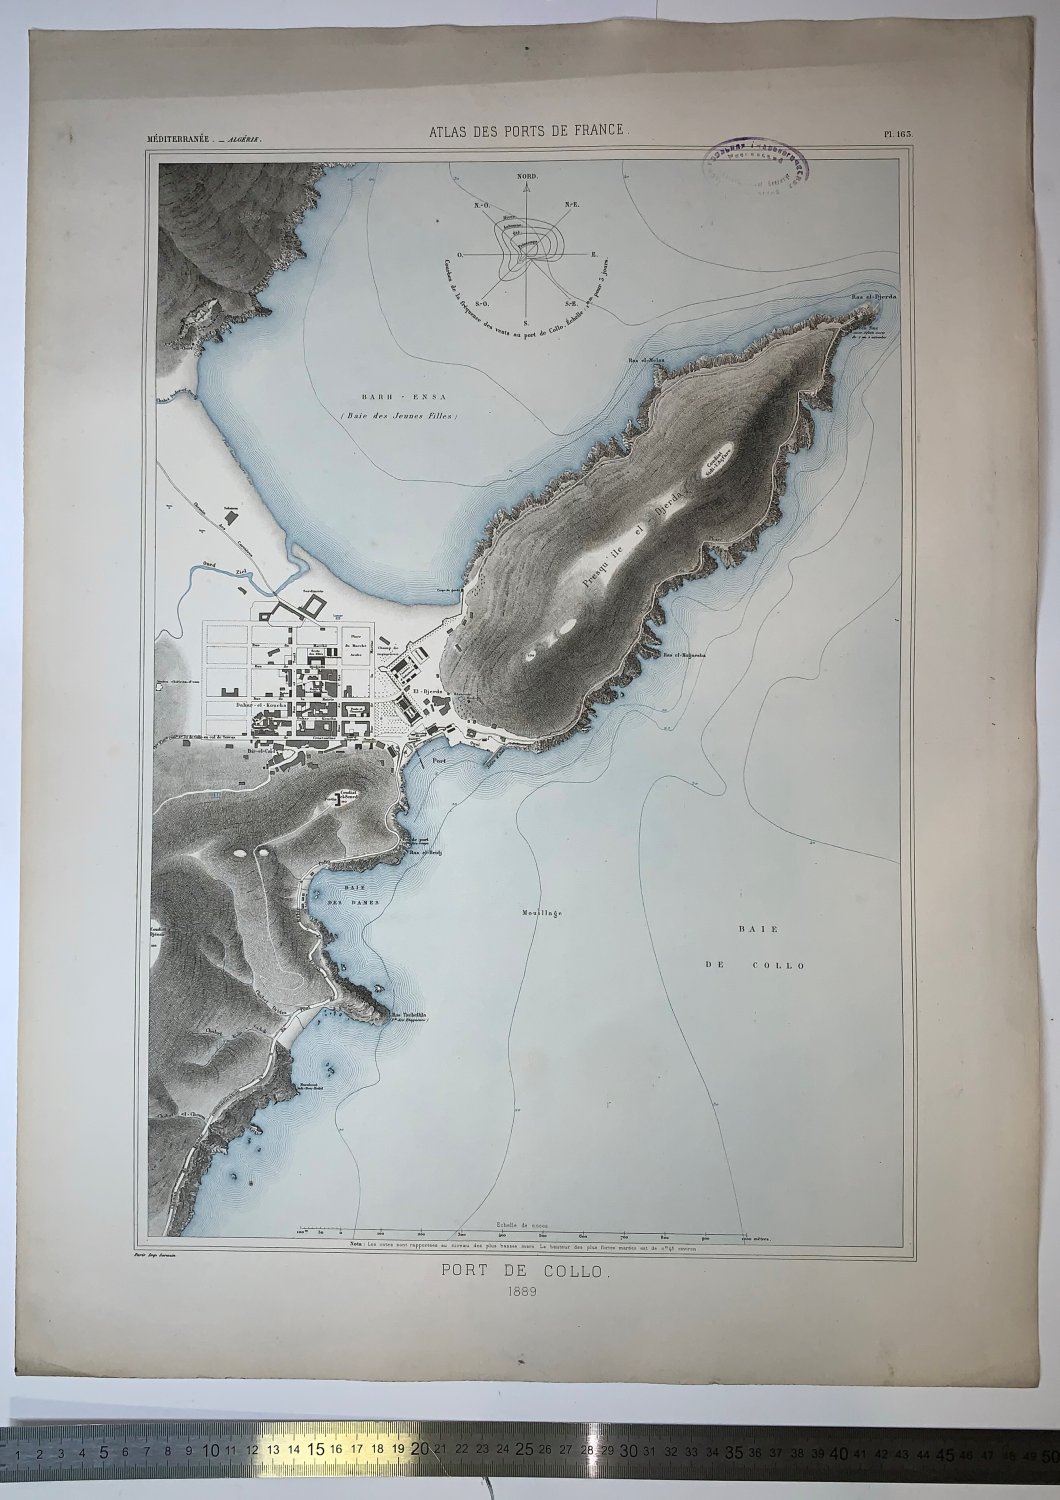 Atlas des ports de France. Port de Collo